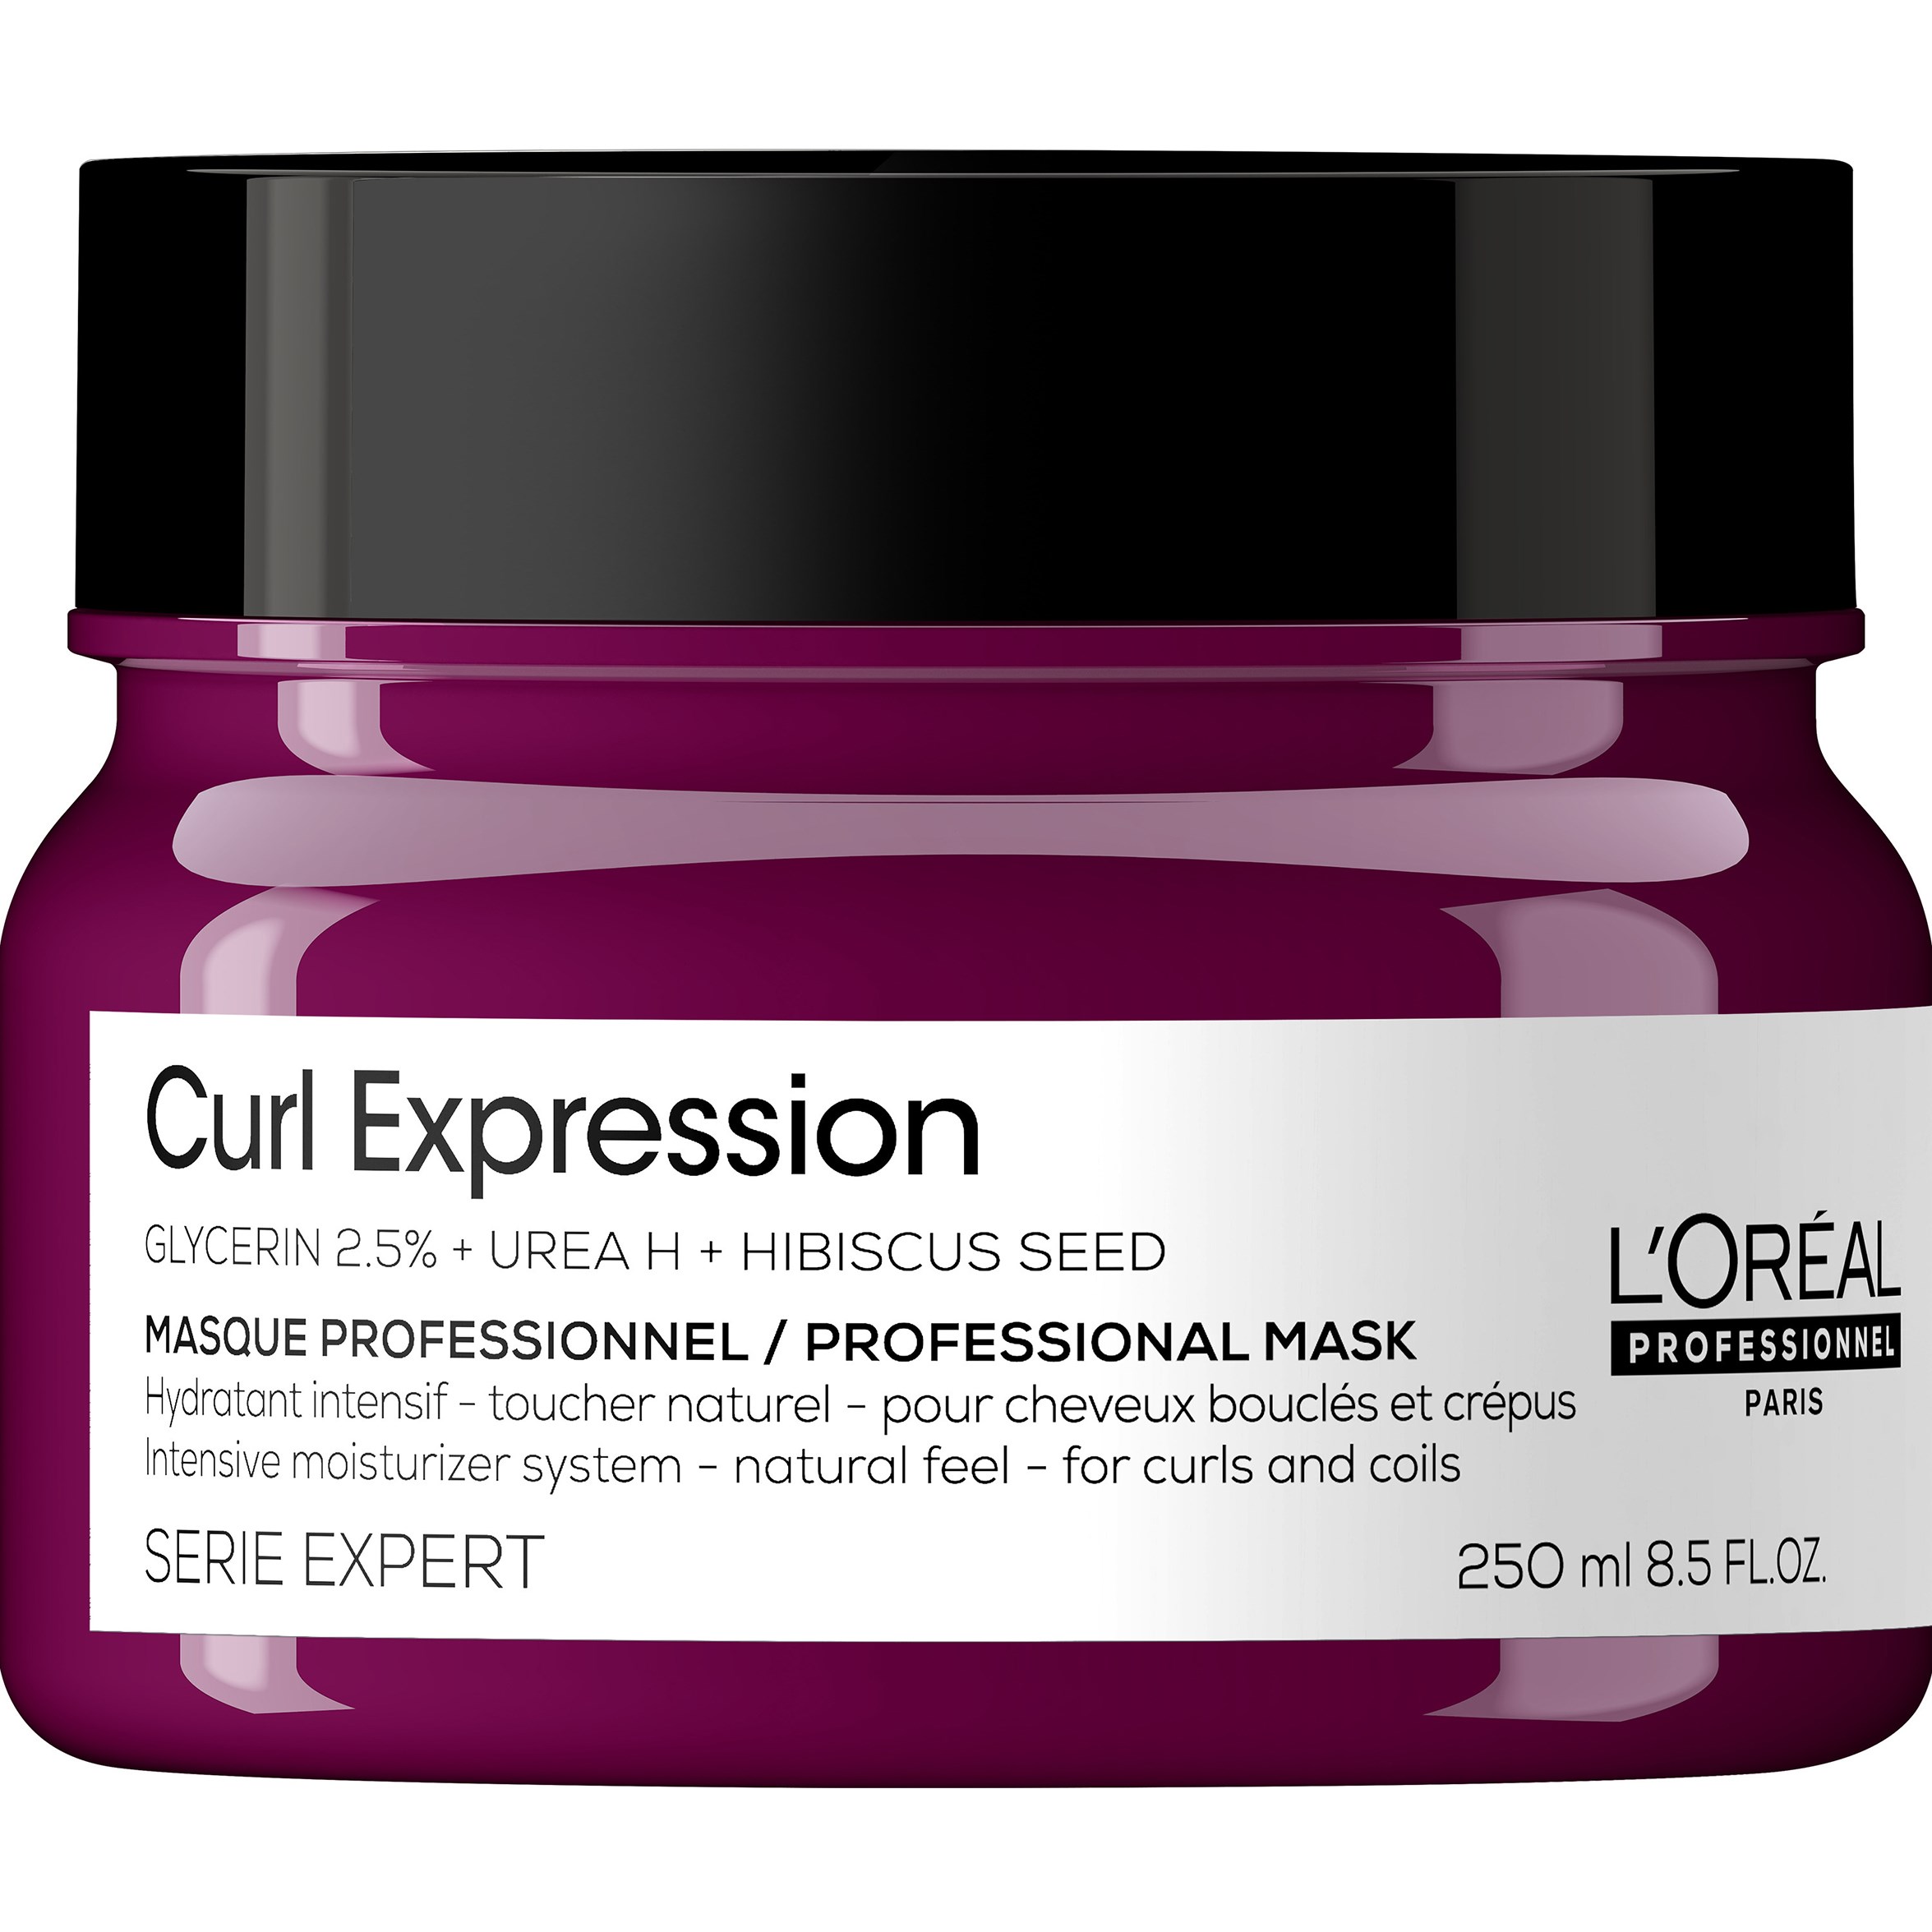 Zdjęcia - Szampon LOreal L'Oréal Professionnel Curl Expression Serie Expert Professional M 